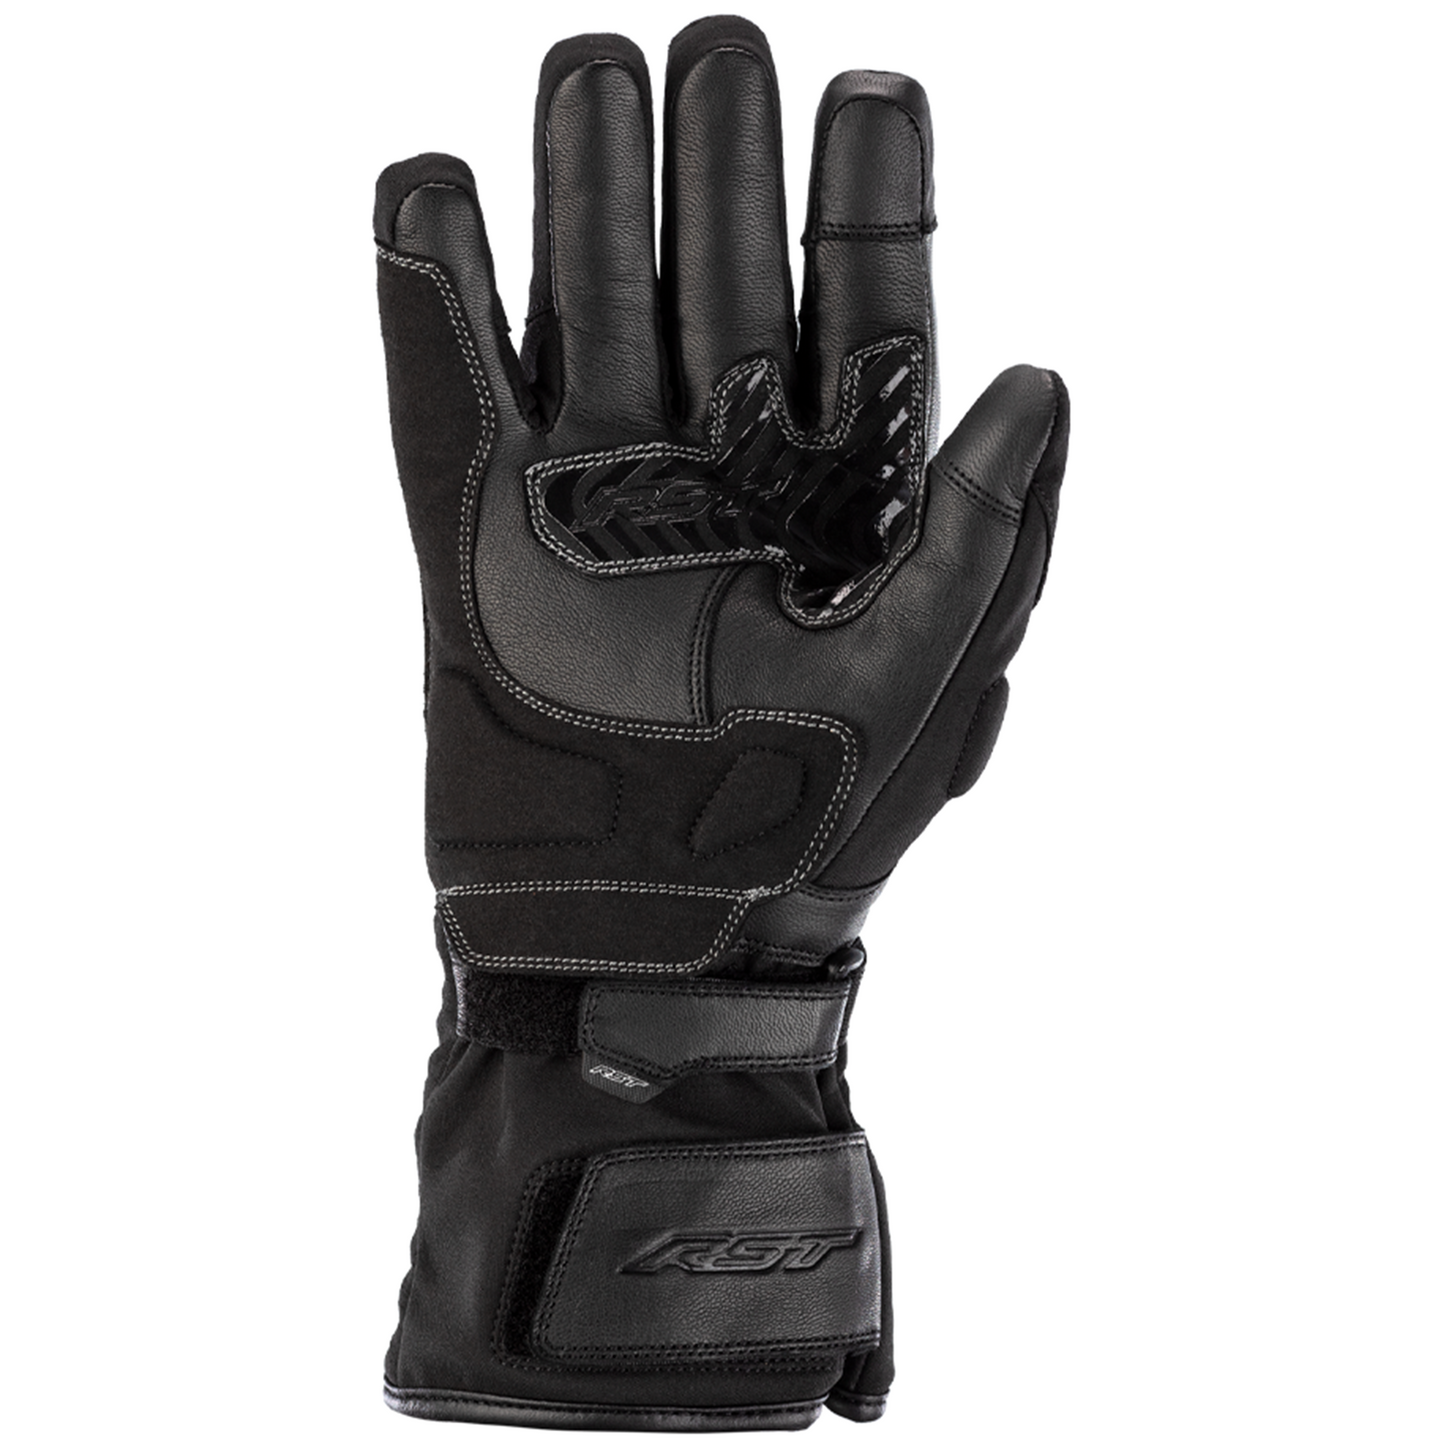 RST Storm 2 Textile (CE) Ladies Waterproof Gloves - Black (2701)